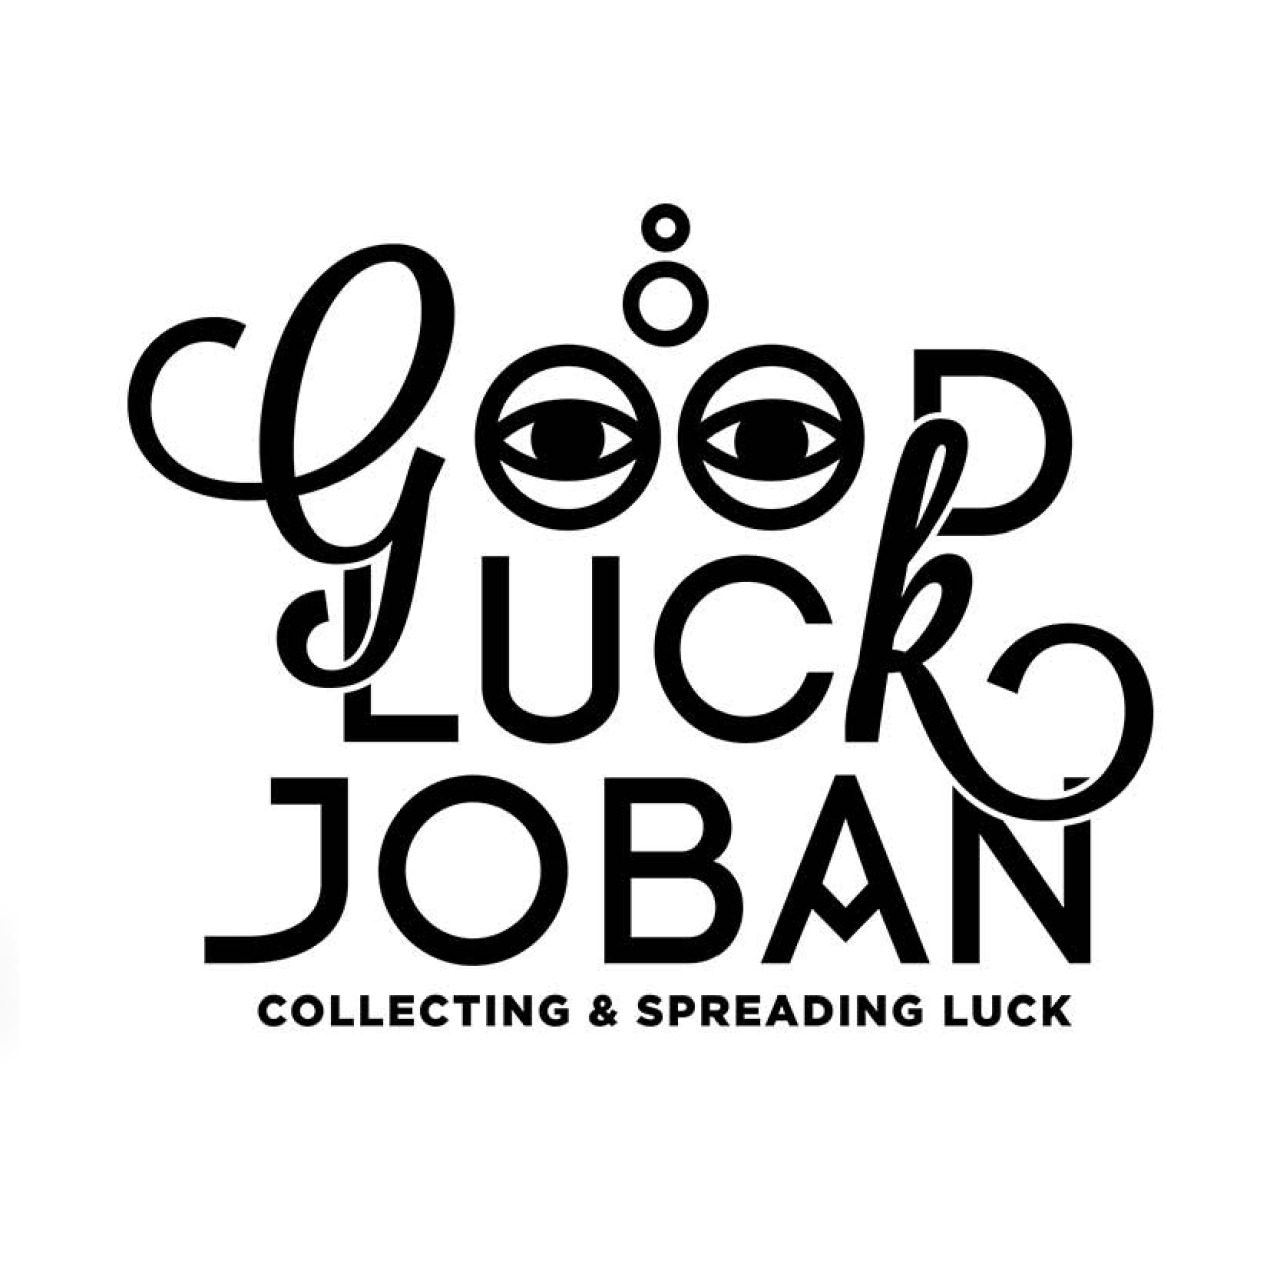 Logo Design
What: Logo Good Luck Joban
Client: Good Luck Joban (NL)